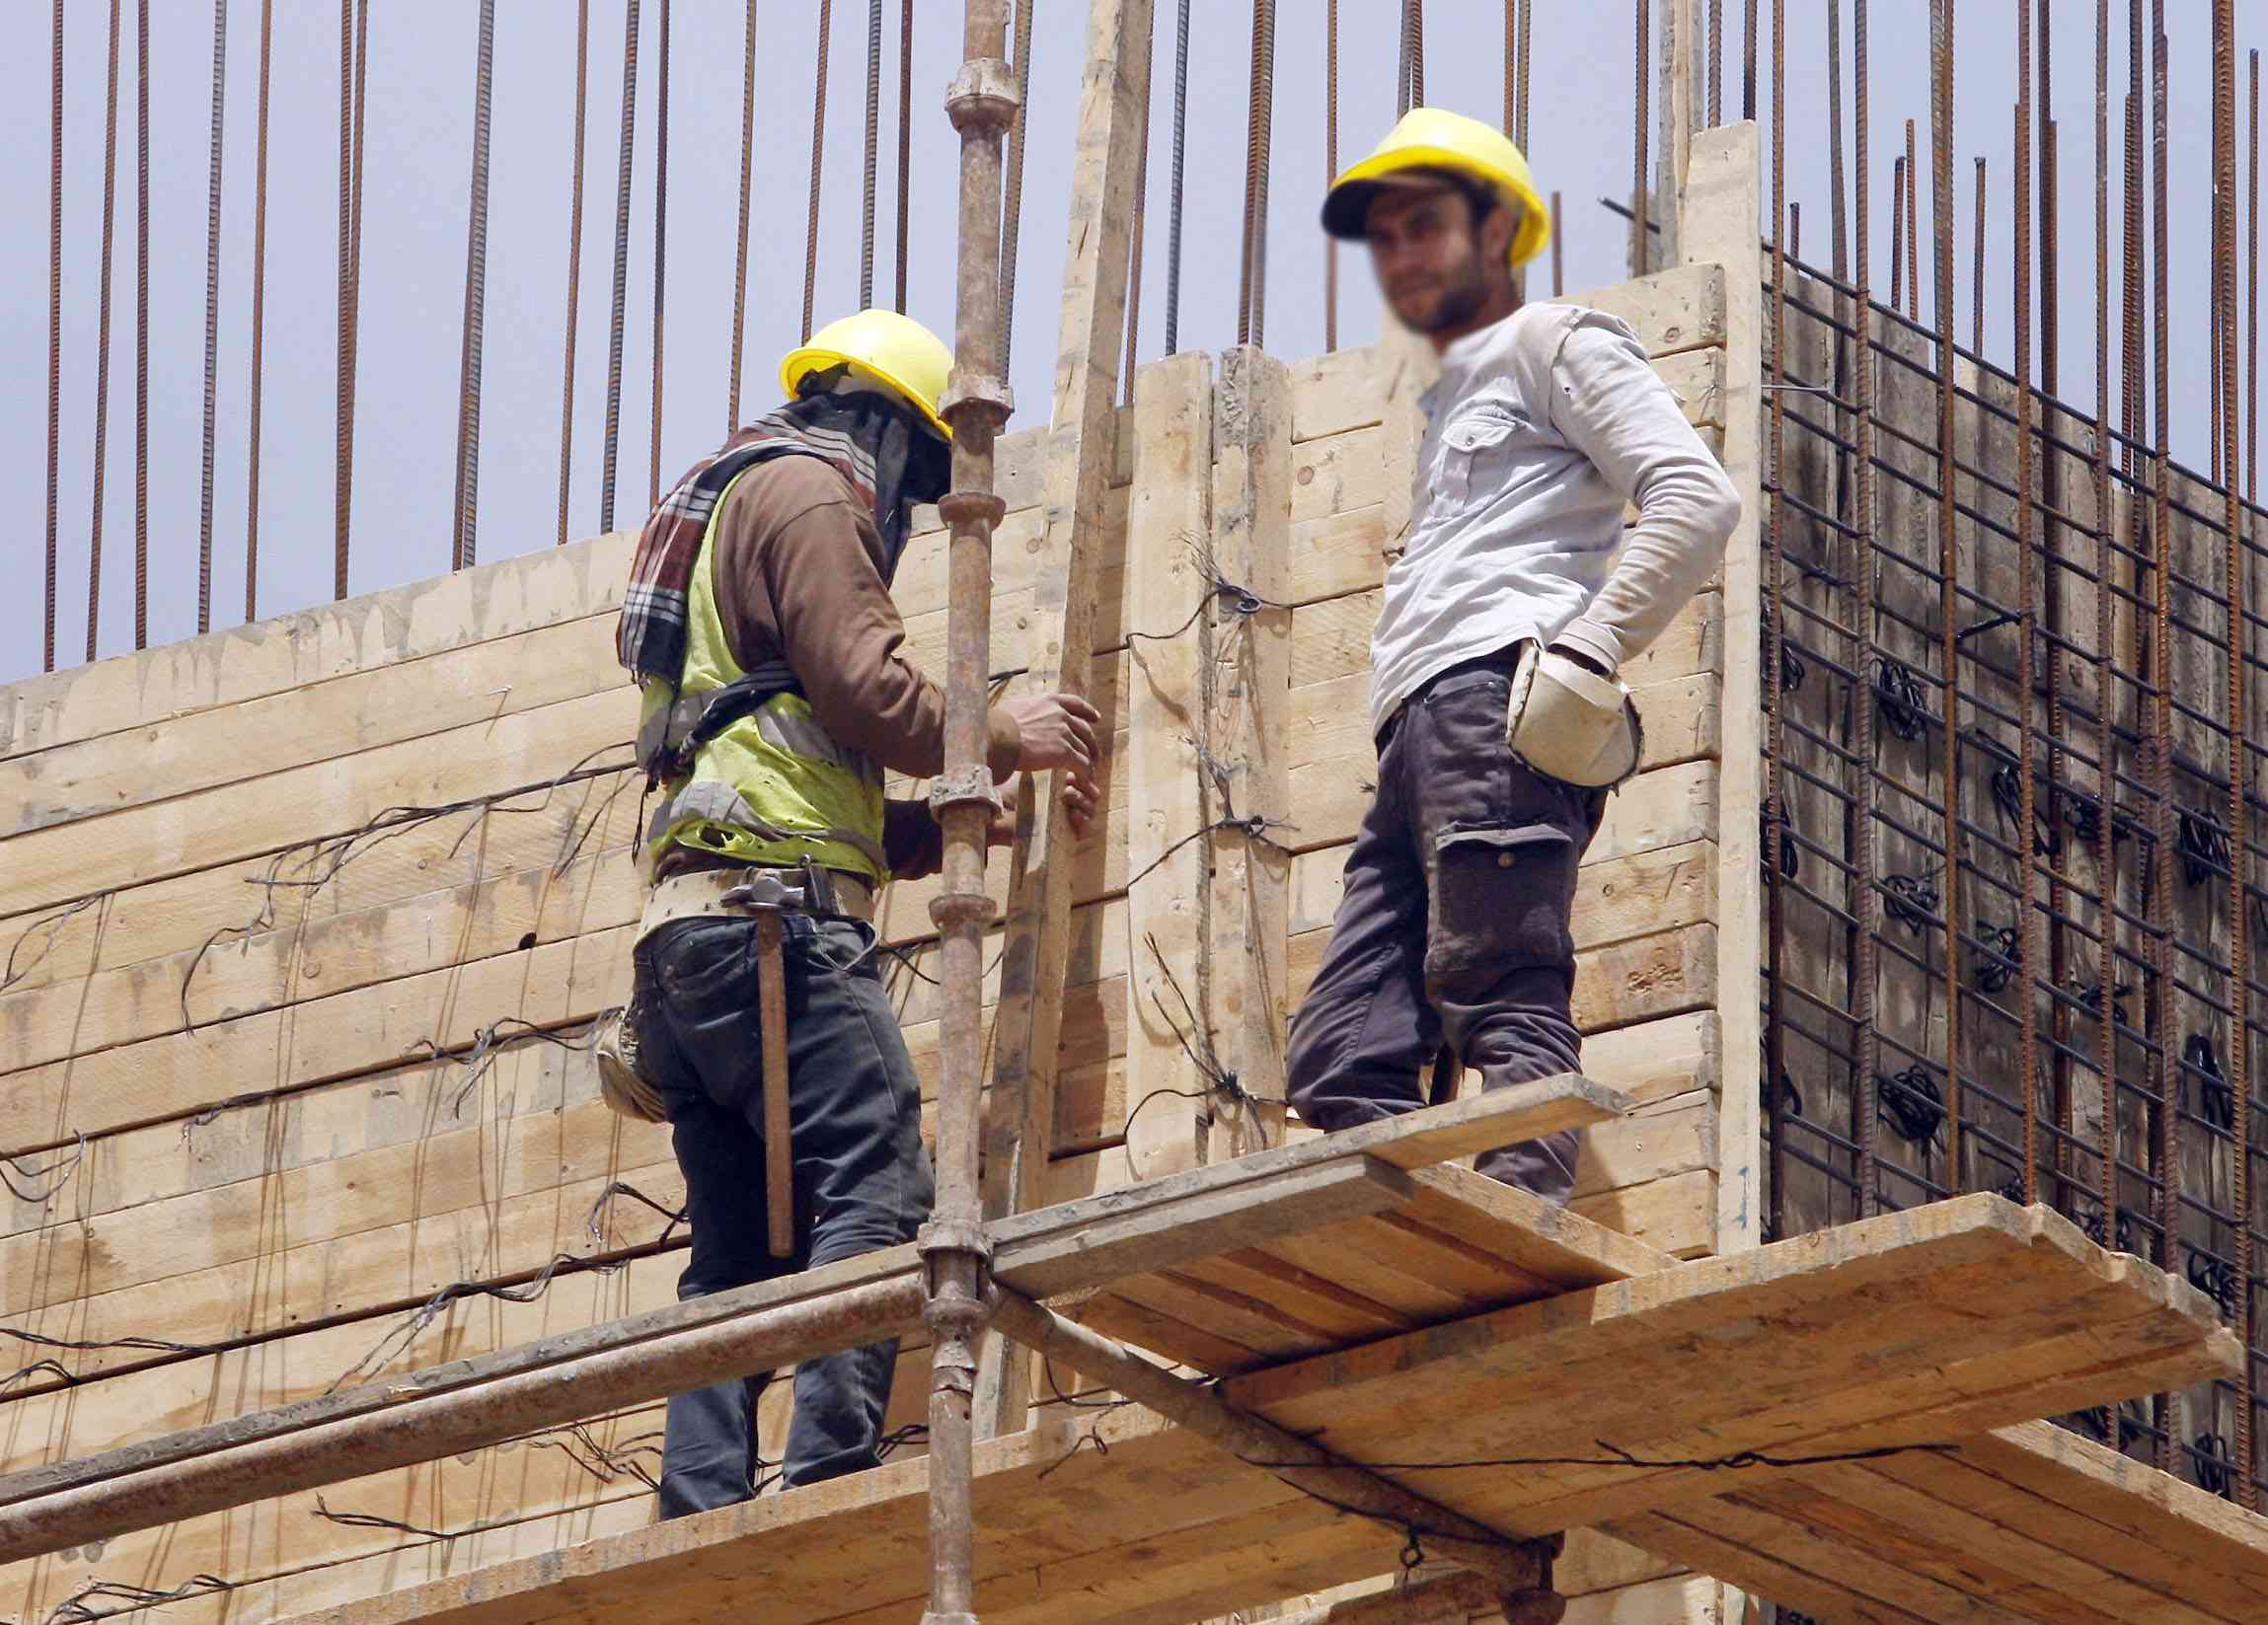 تقرير يدعو لتوفير فرص عمل لائقة للعمال المهاجرين واللاجئين